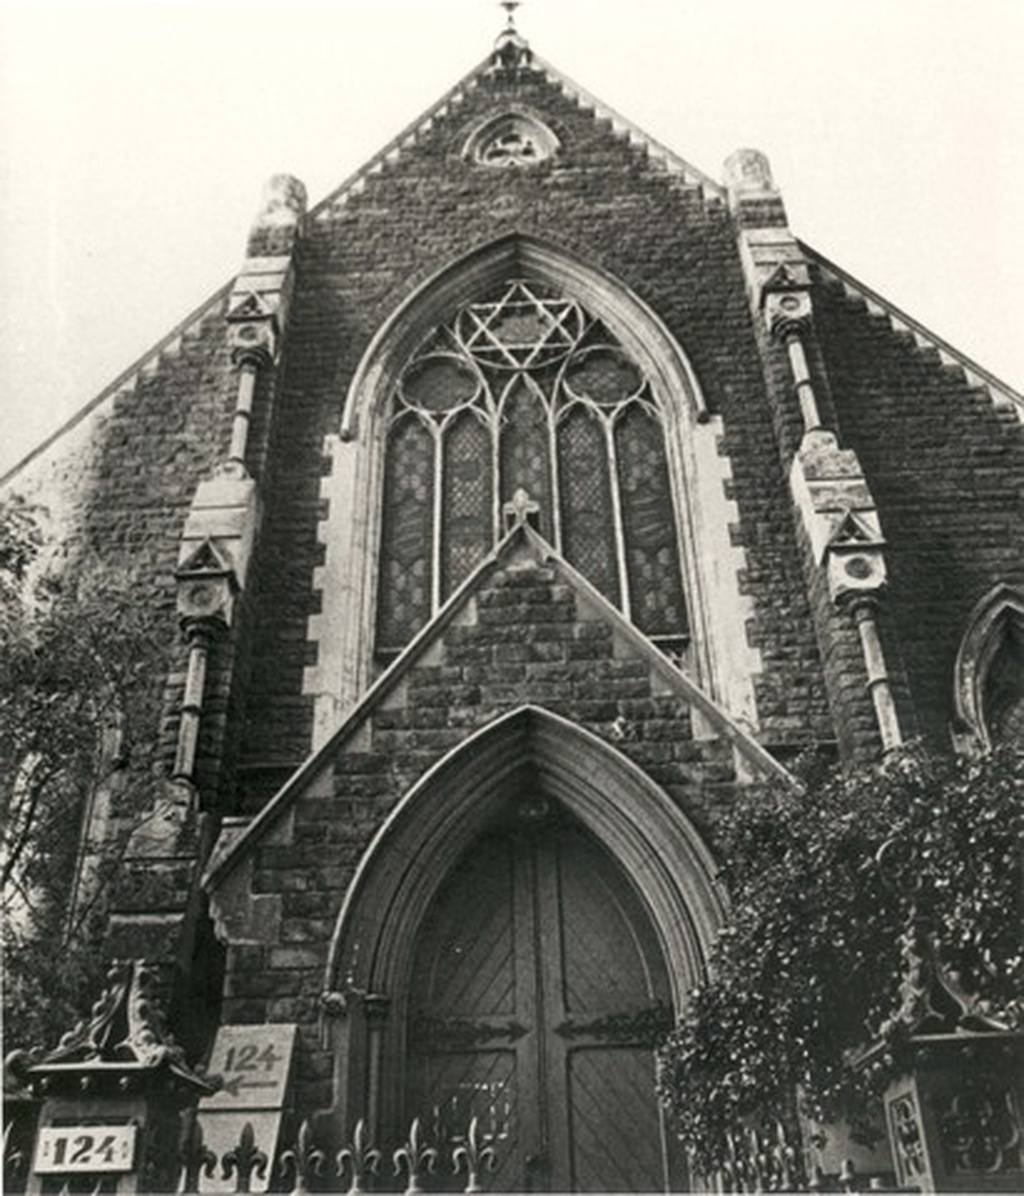 Napier St Presbyterian Church